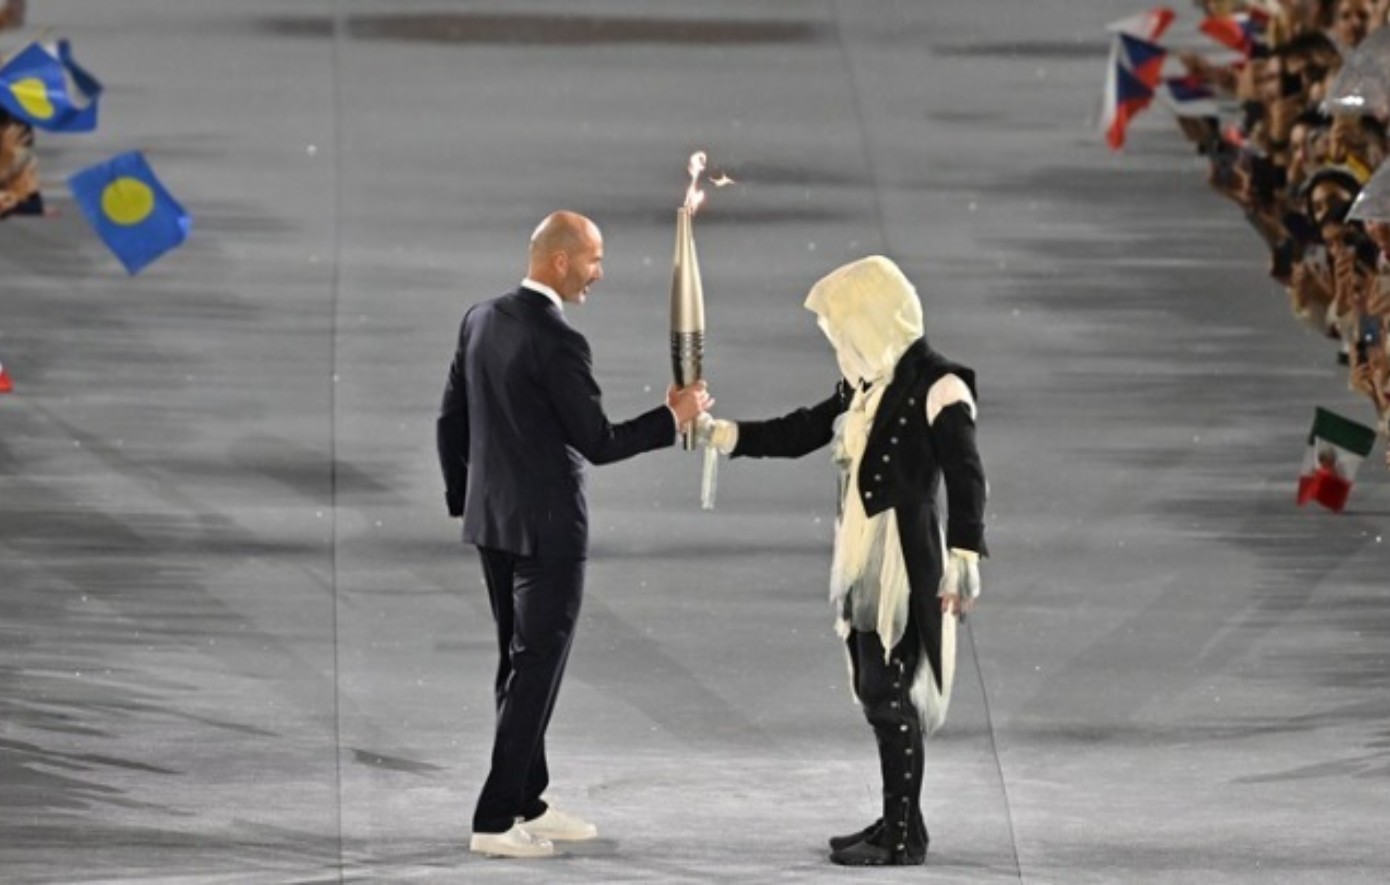 Ολυμπιακοί Αγώνες 2024: Ο μασκοφόρος λαμπαδηδρόμος ήταν 12 διαφορετικοί άνθρωποι